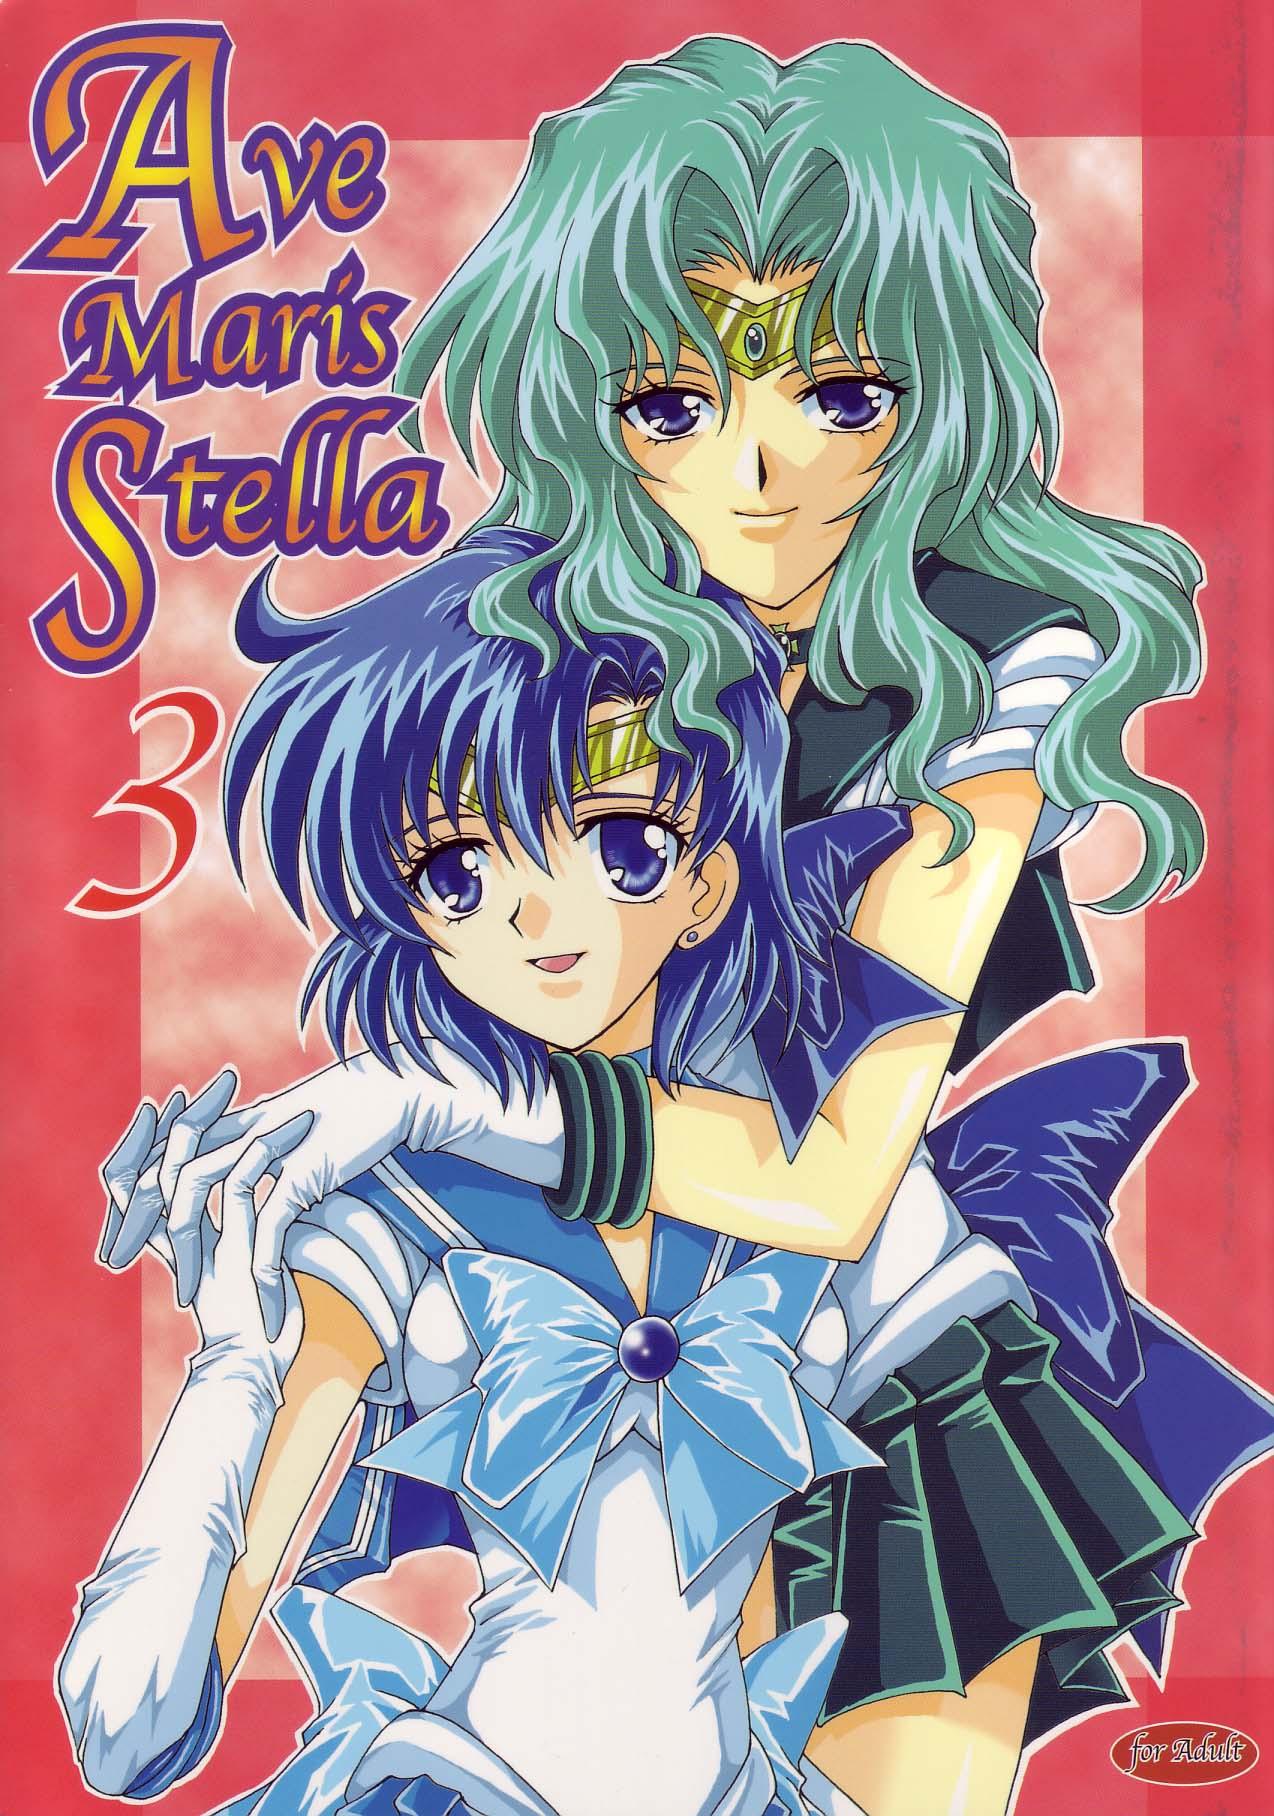 Dancing Ave Maris Stella 3 - Sailor moon Les - Picture 1